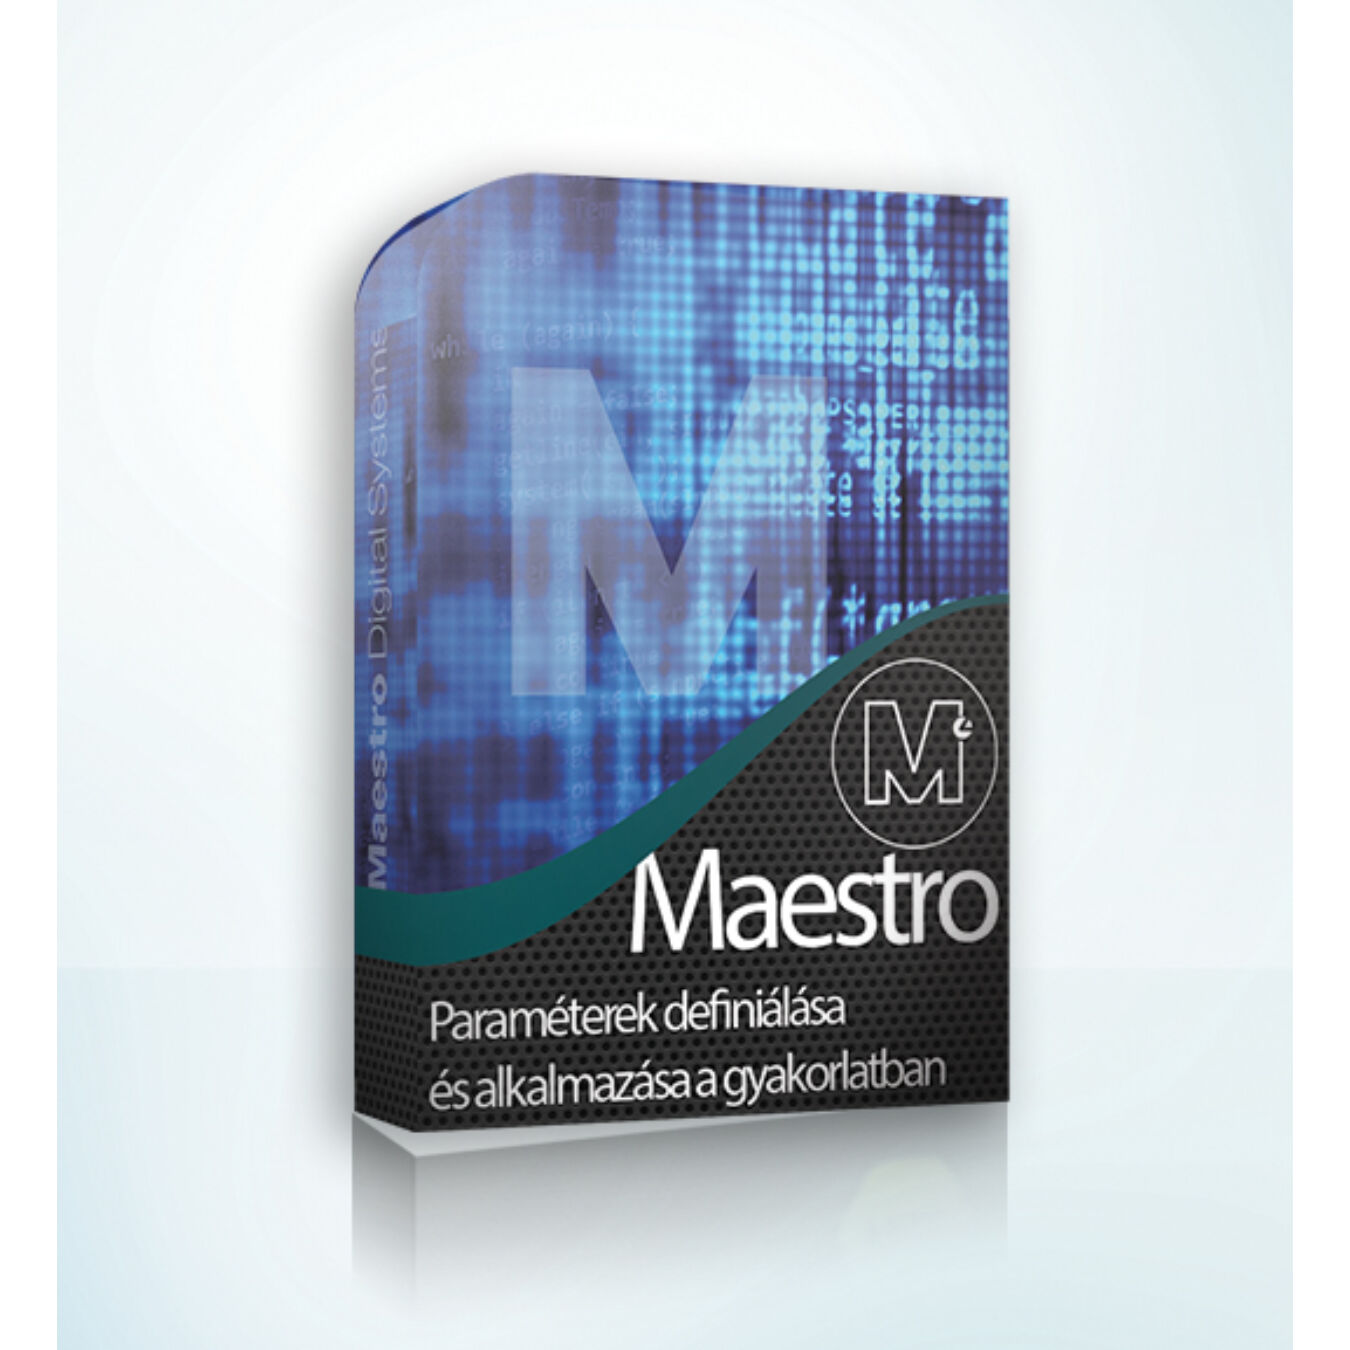 Maestro Paraméterek definiálása és alkalmazása a gyakorlatban